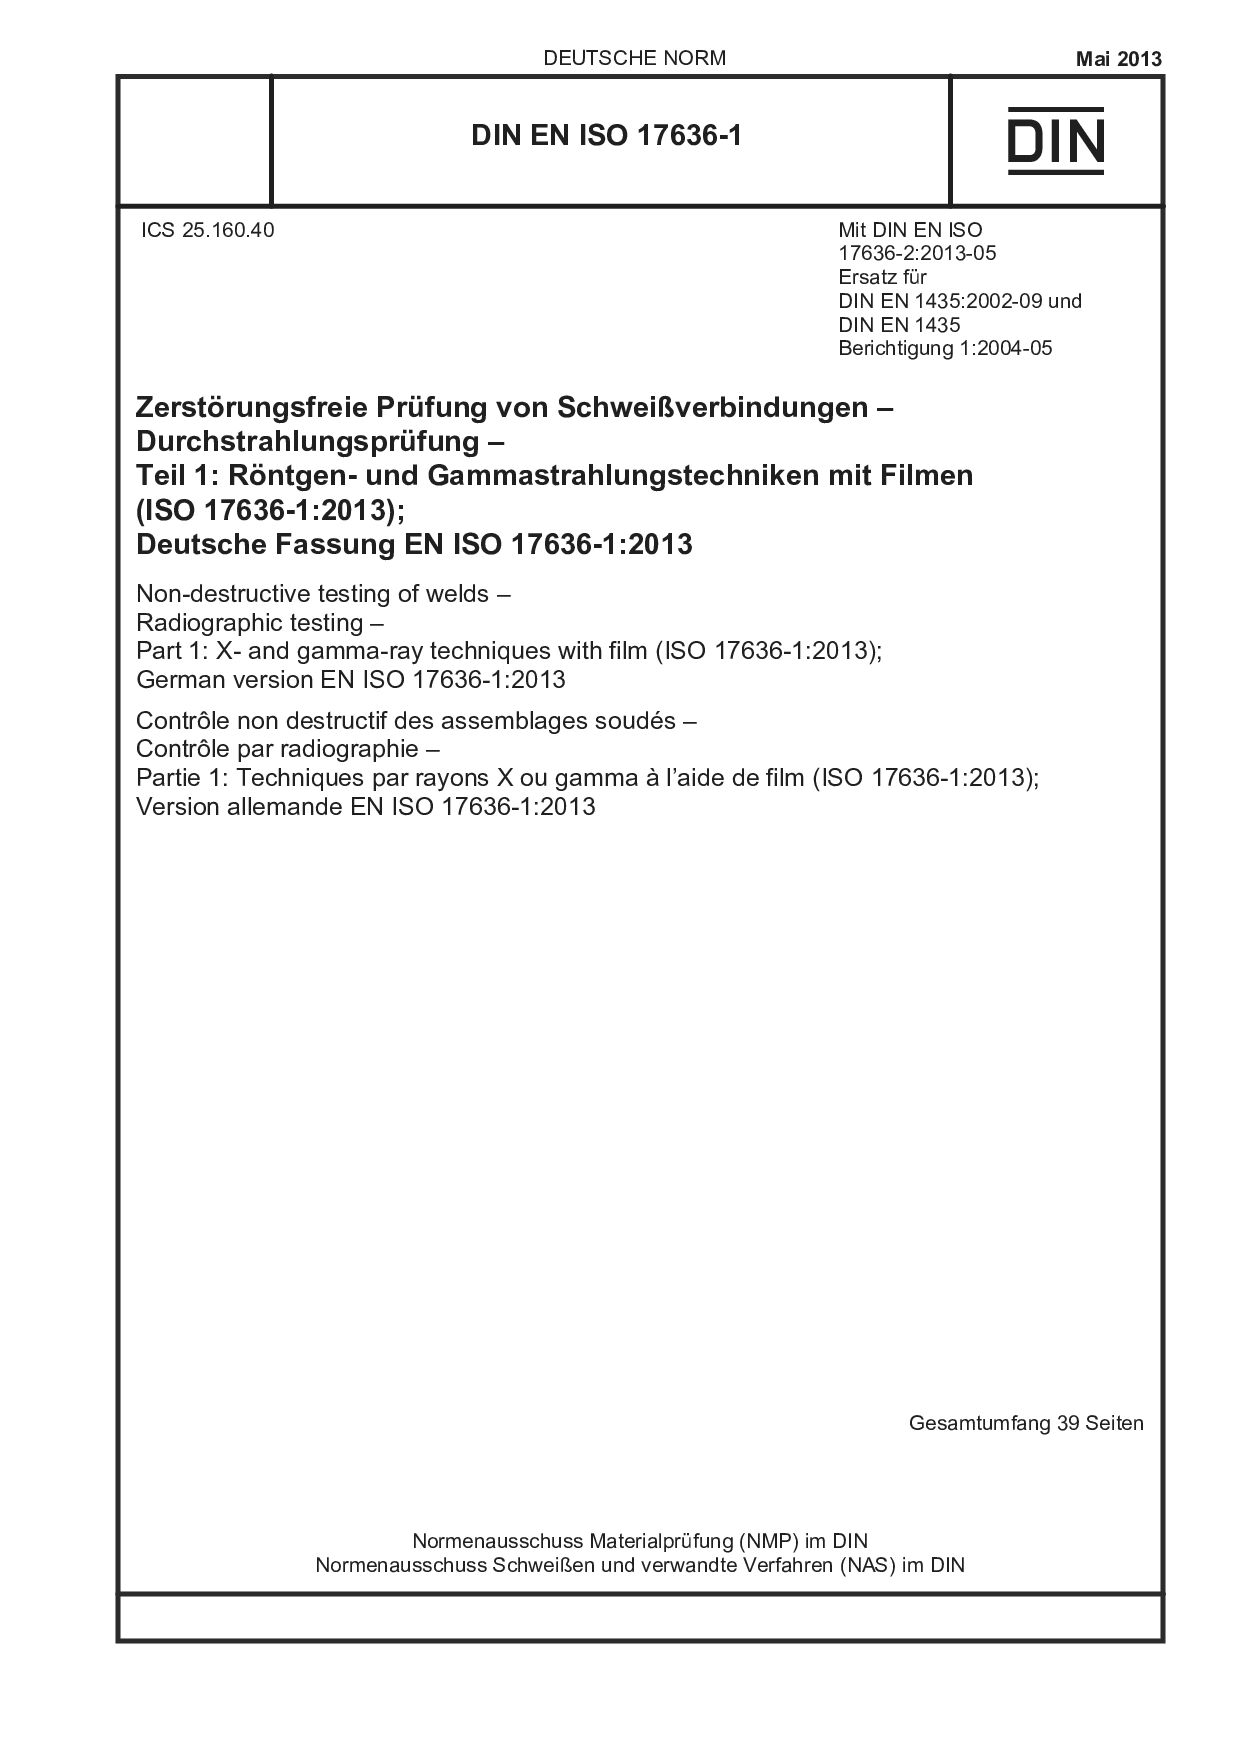 DIN EN ISO 17636-1:2013封面图